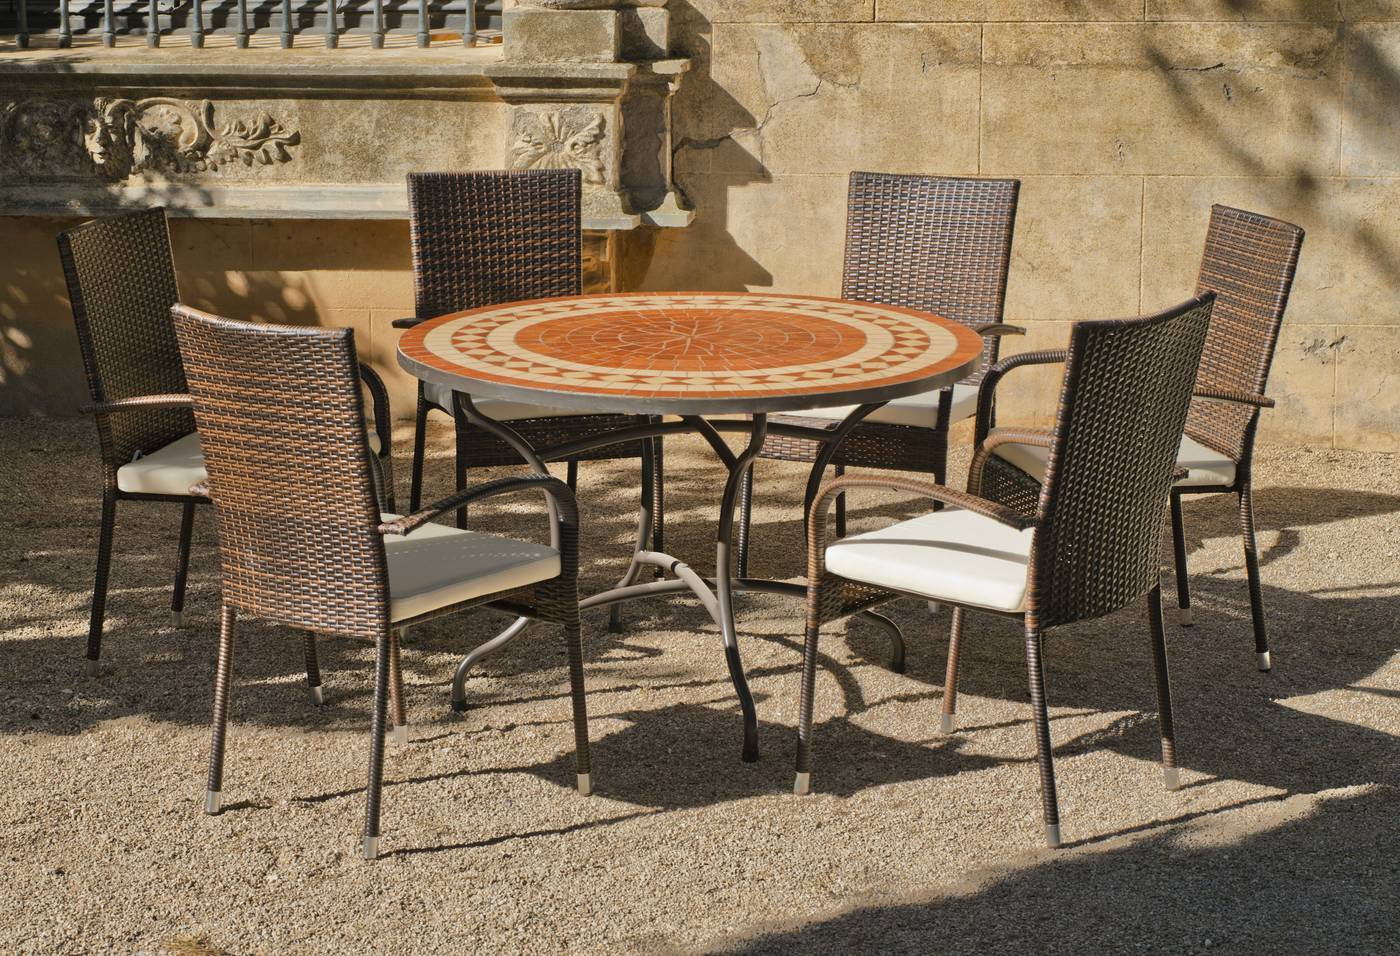 Conjunto de forja para jardín: 1 mesa con panel mosaico + 6 sillones de ratán sintético + 6 cojines